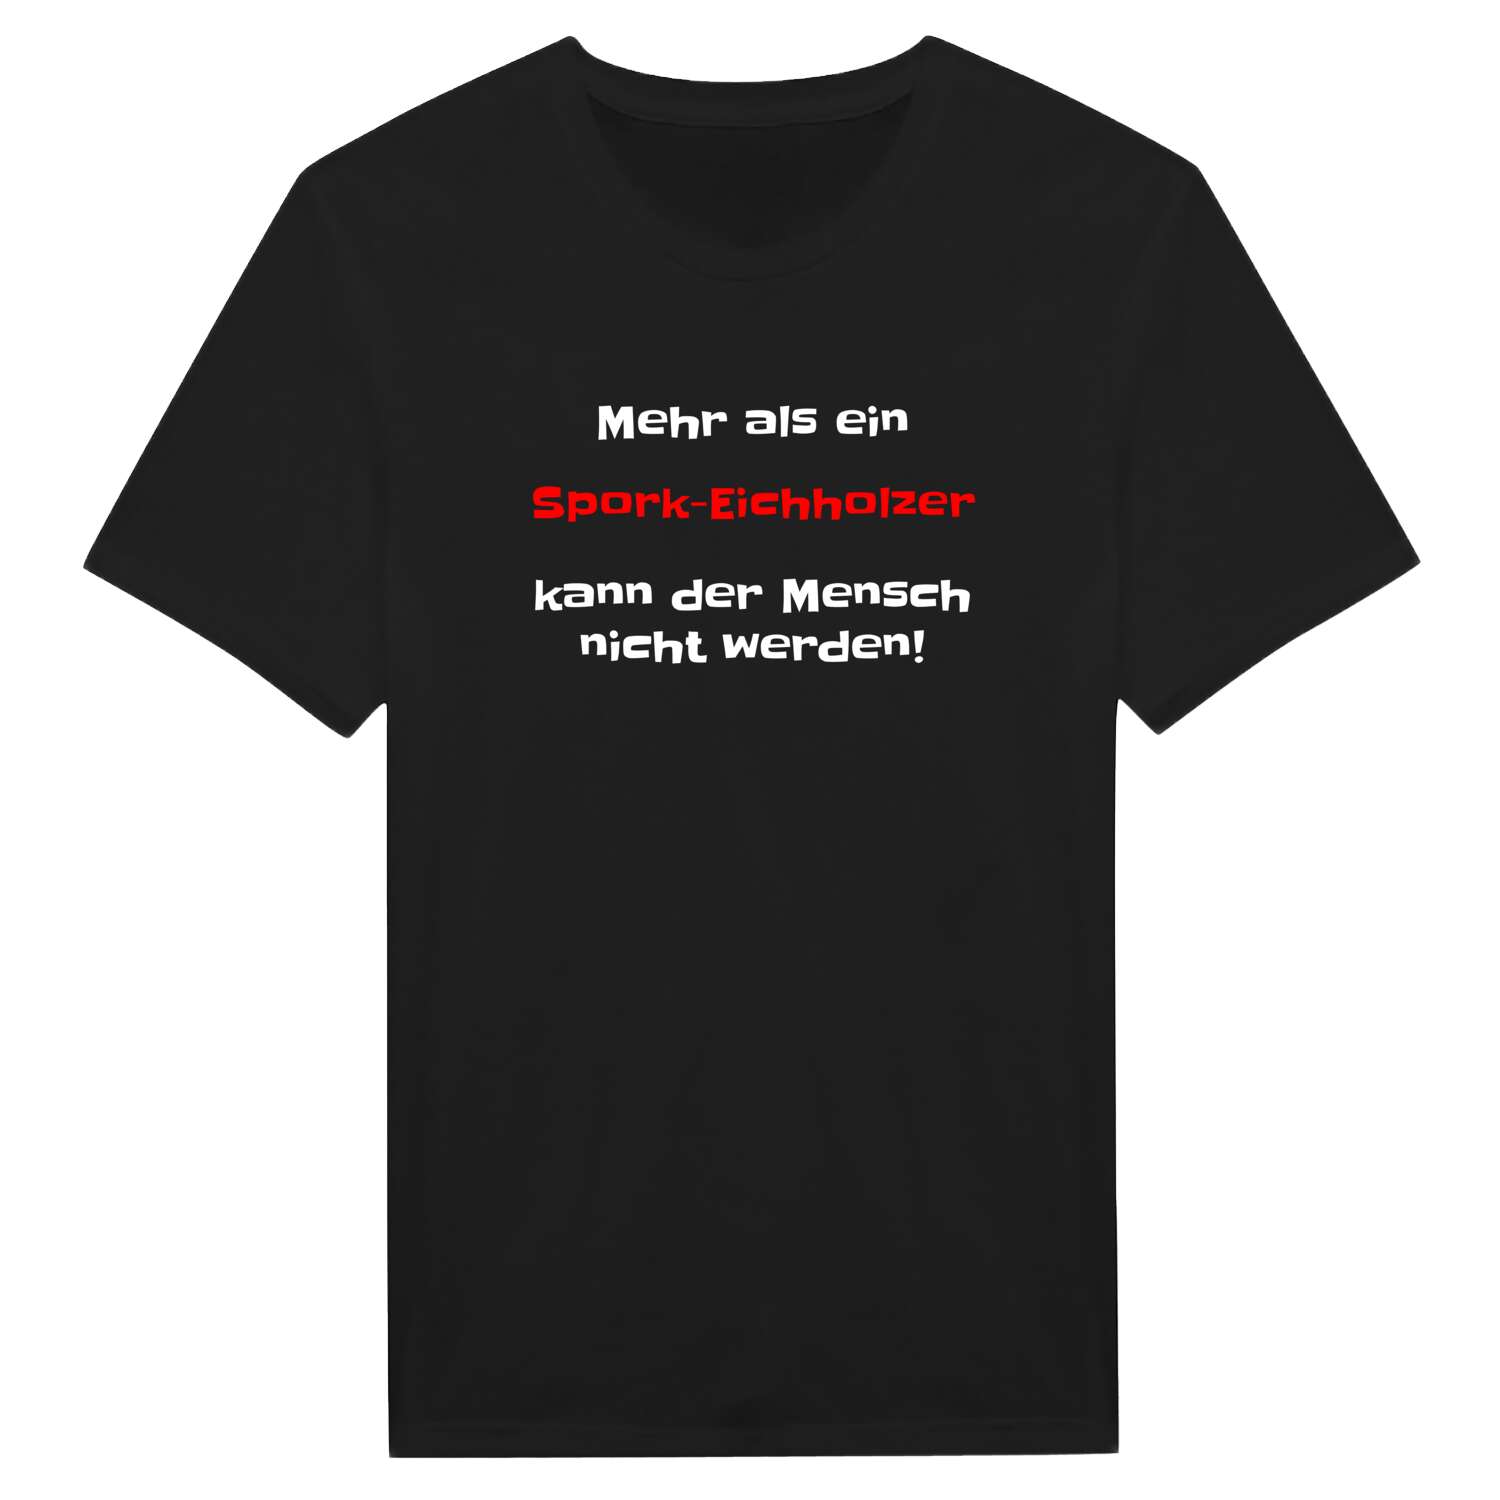 Spork-Eichholz T-Shirt »Mehr als ein«